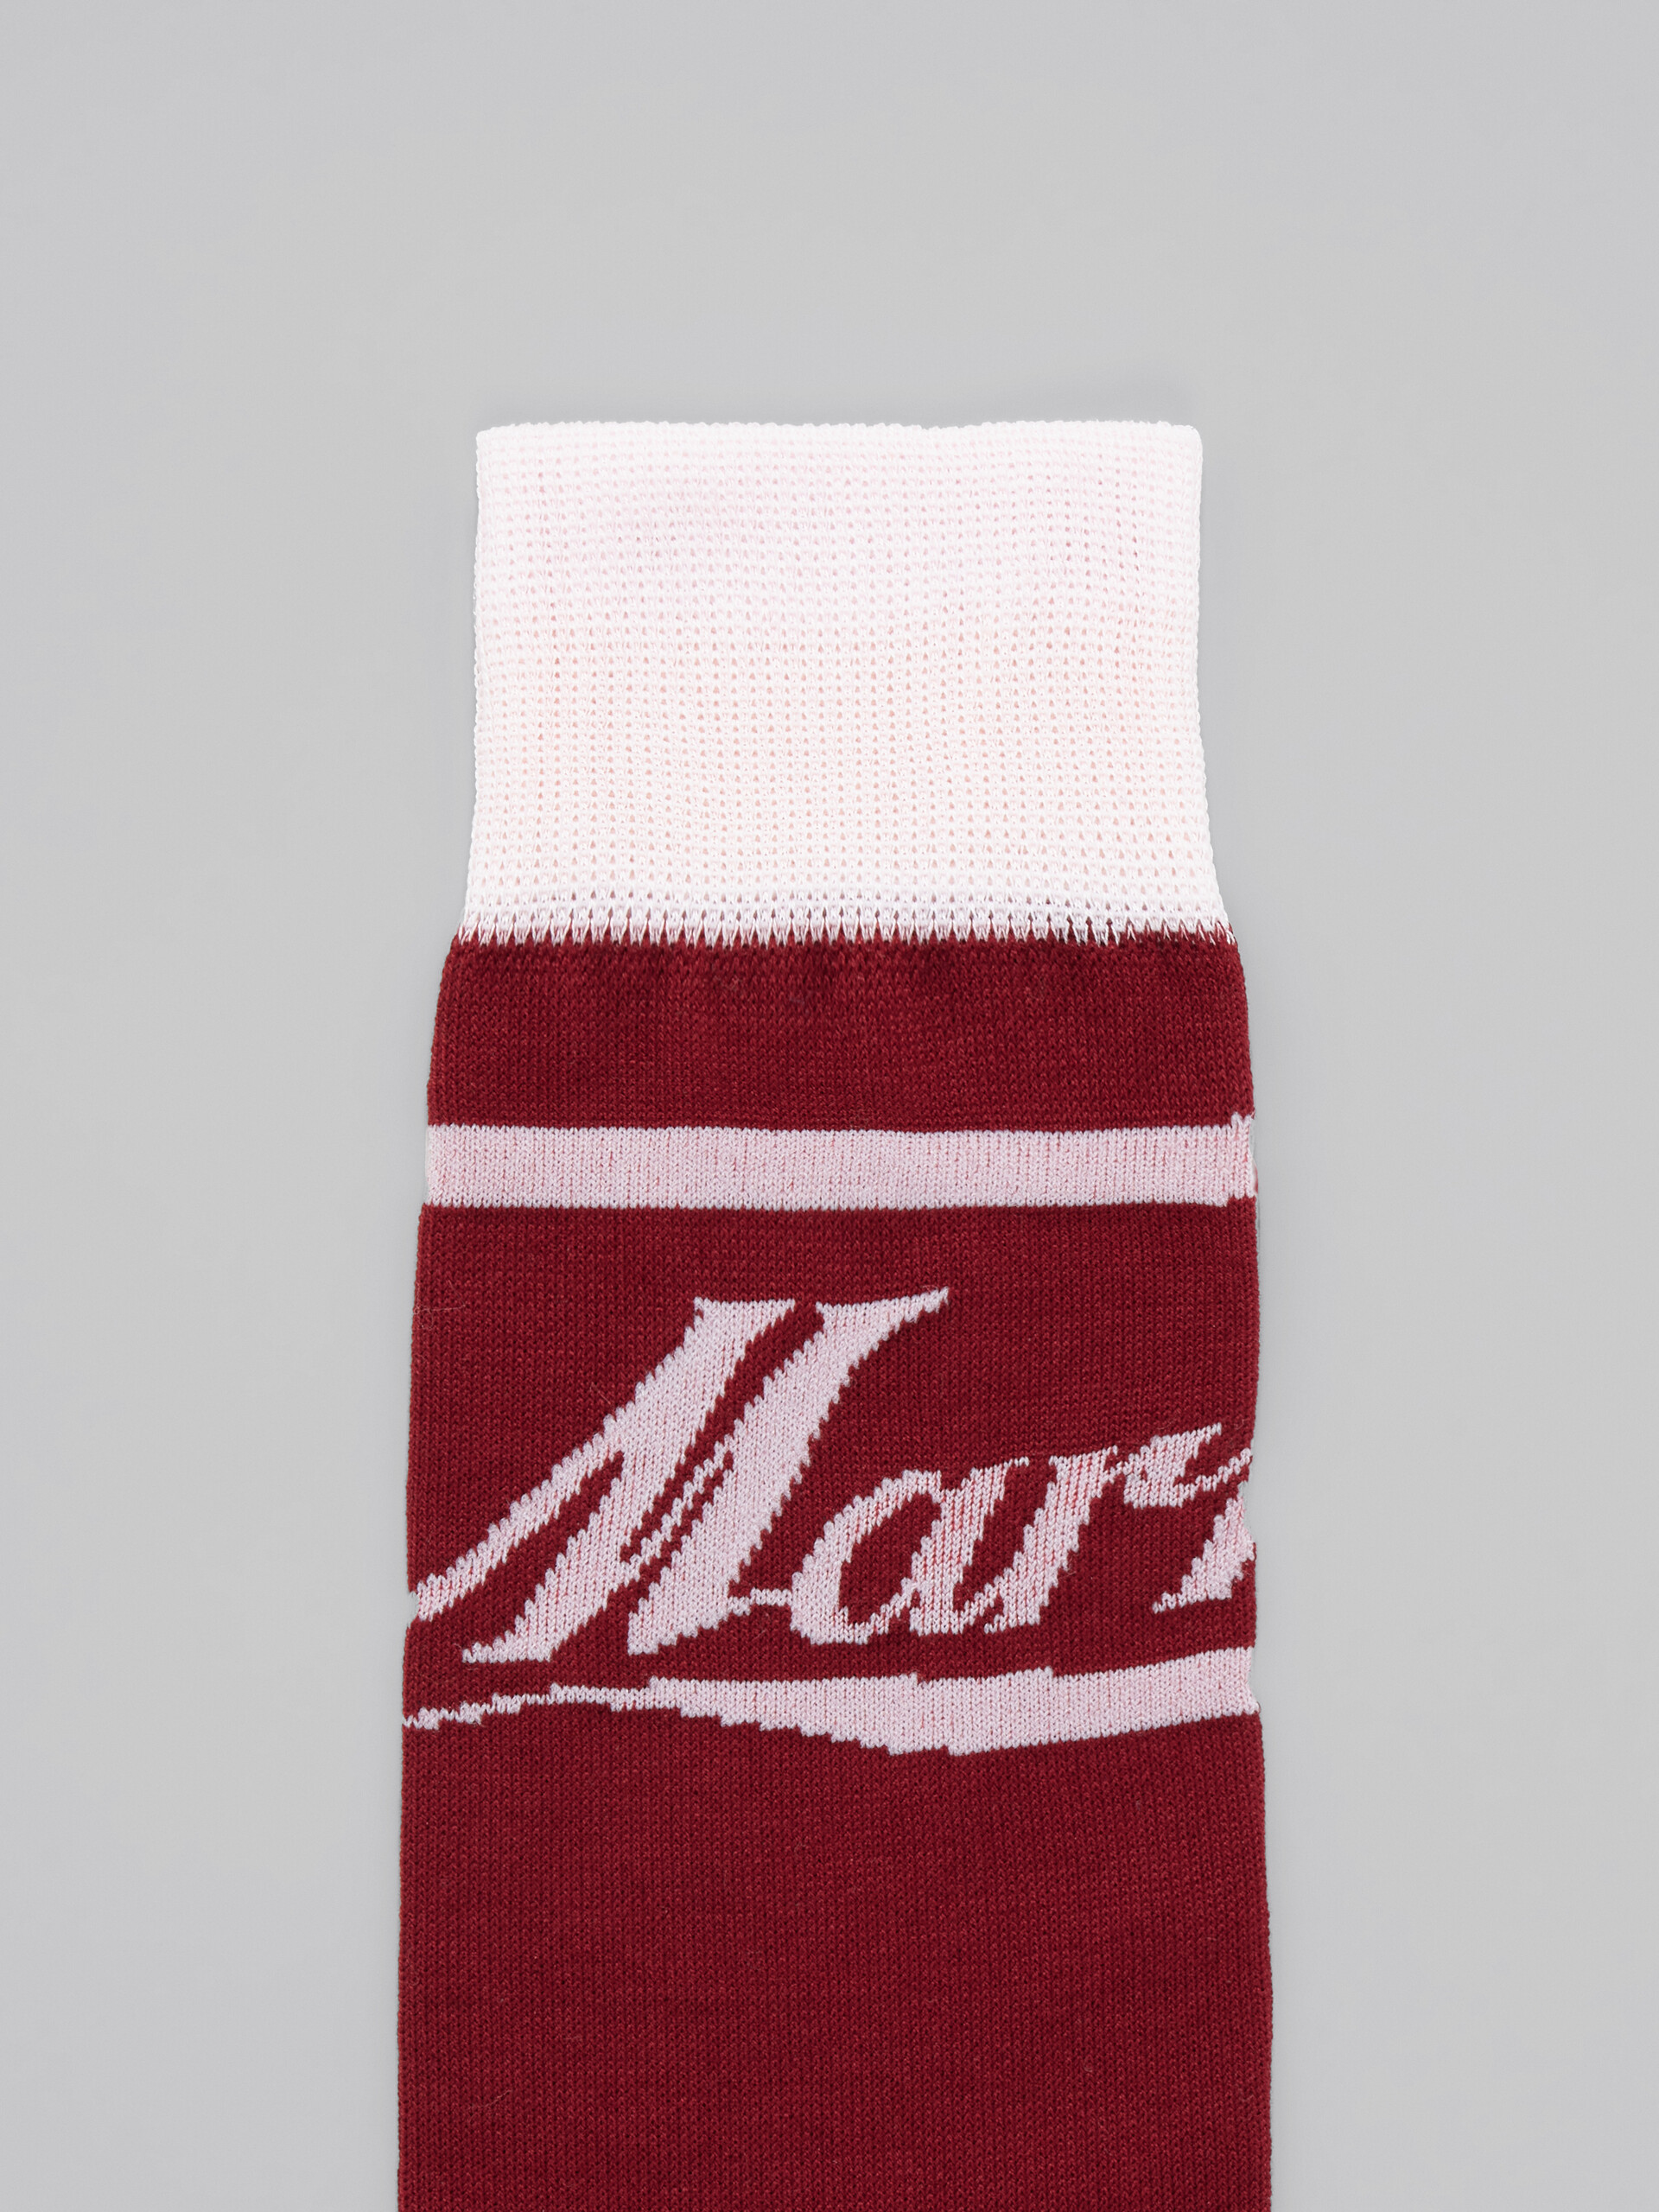 Burgundy and pink socks with logo - Socks - Image 3